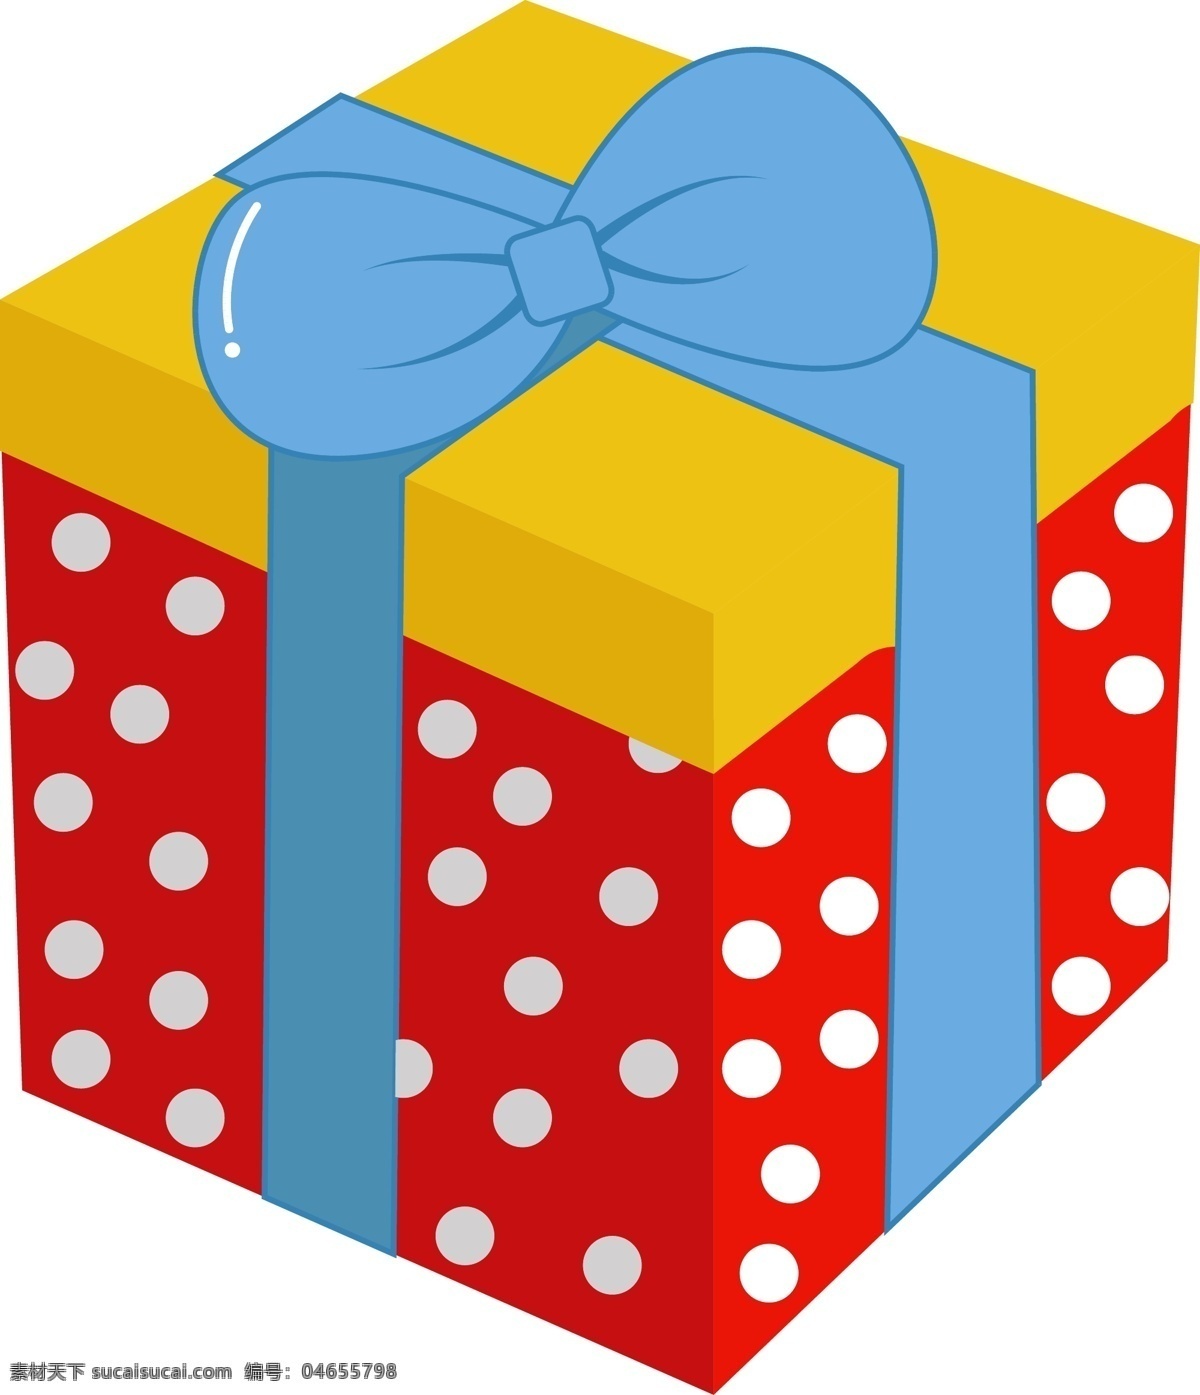 圣诞节 礼物 盒 矢量 图案 卡通 彩色 商用 圣诞节礼物盒 彩色礼物盒 节日 图标 圆点图案盒子 蝴蝶结 装饰